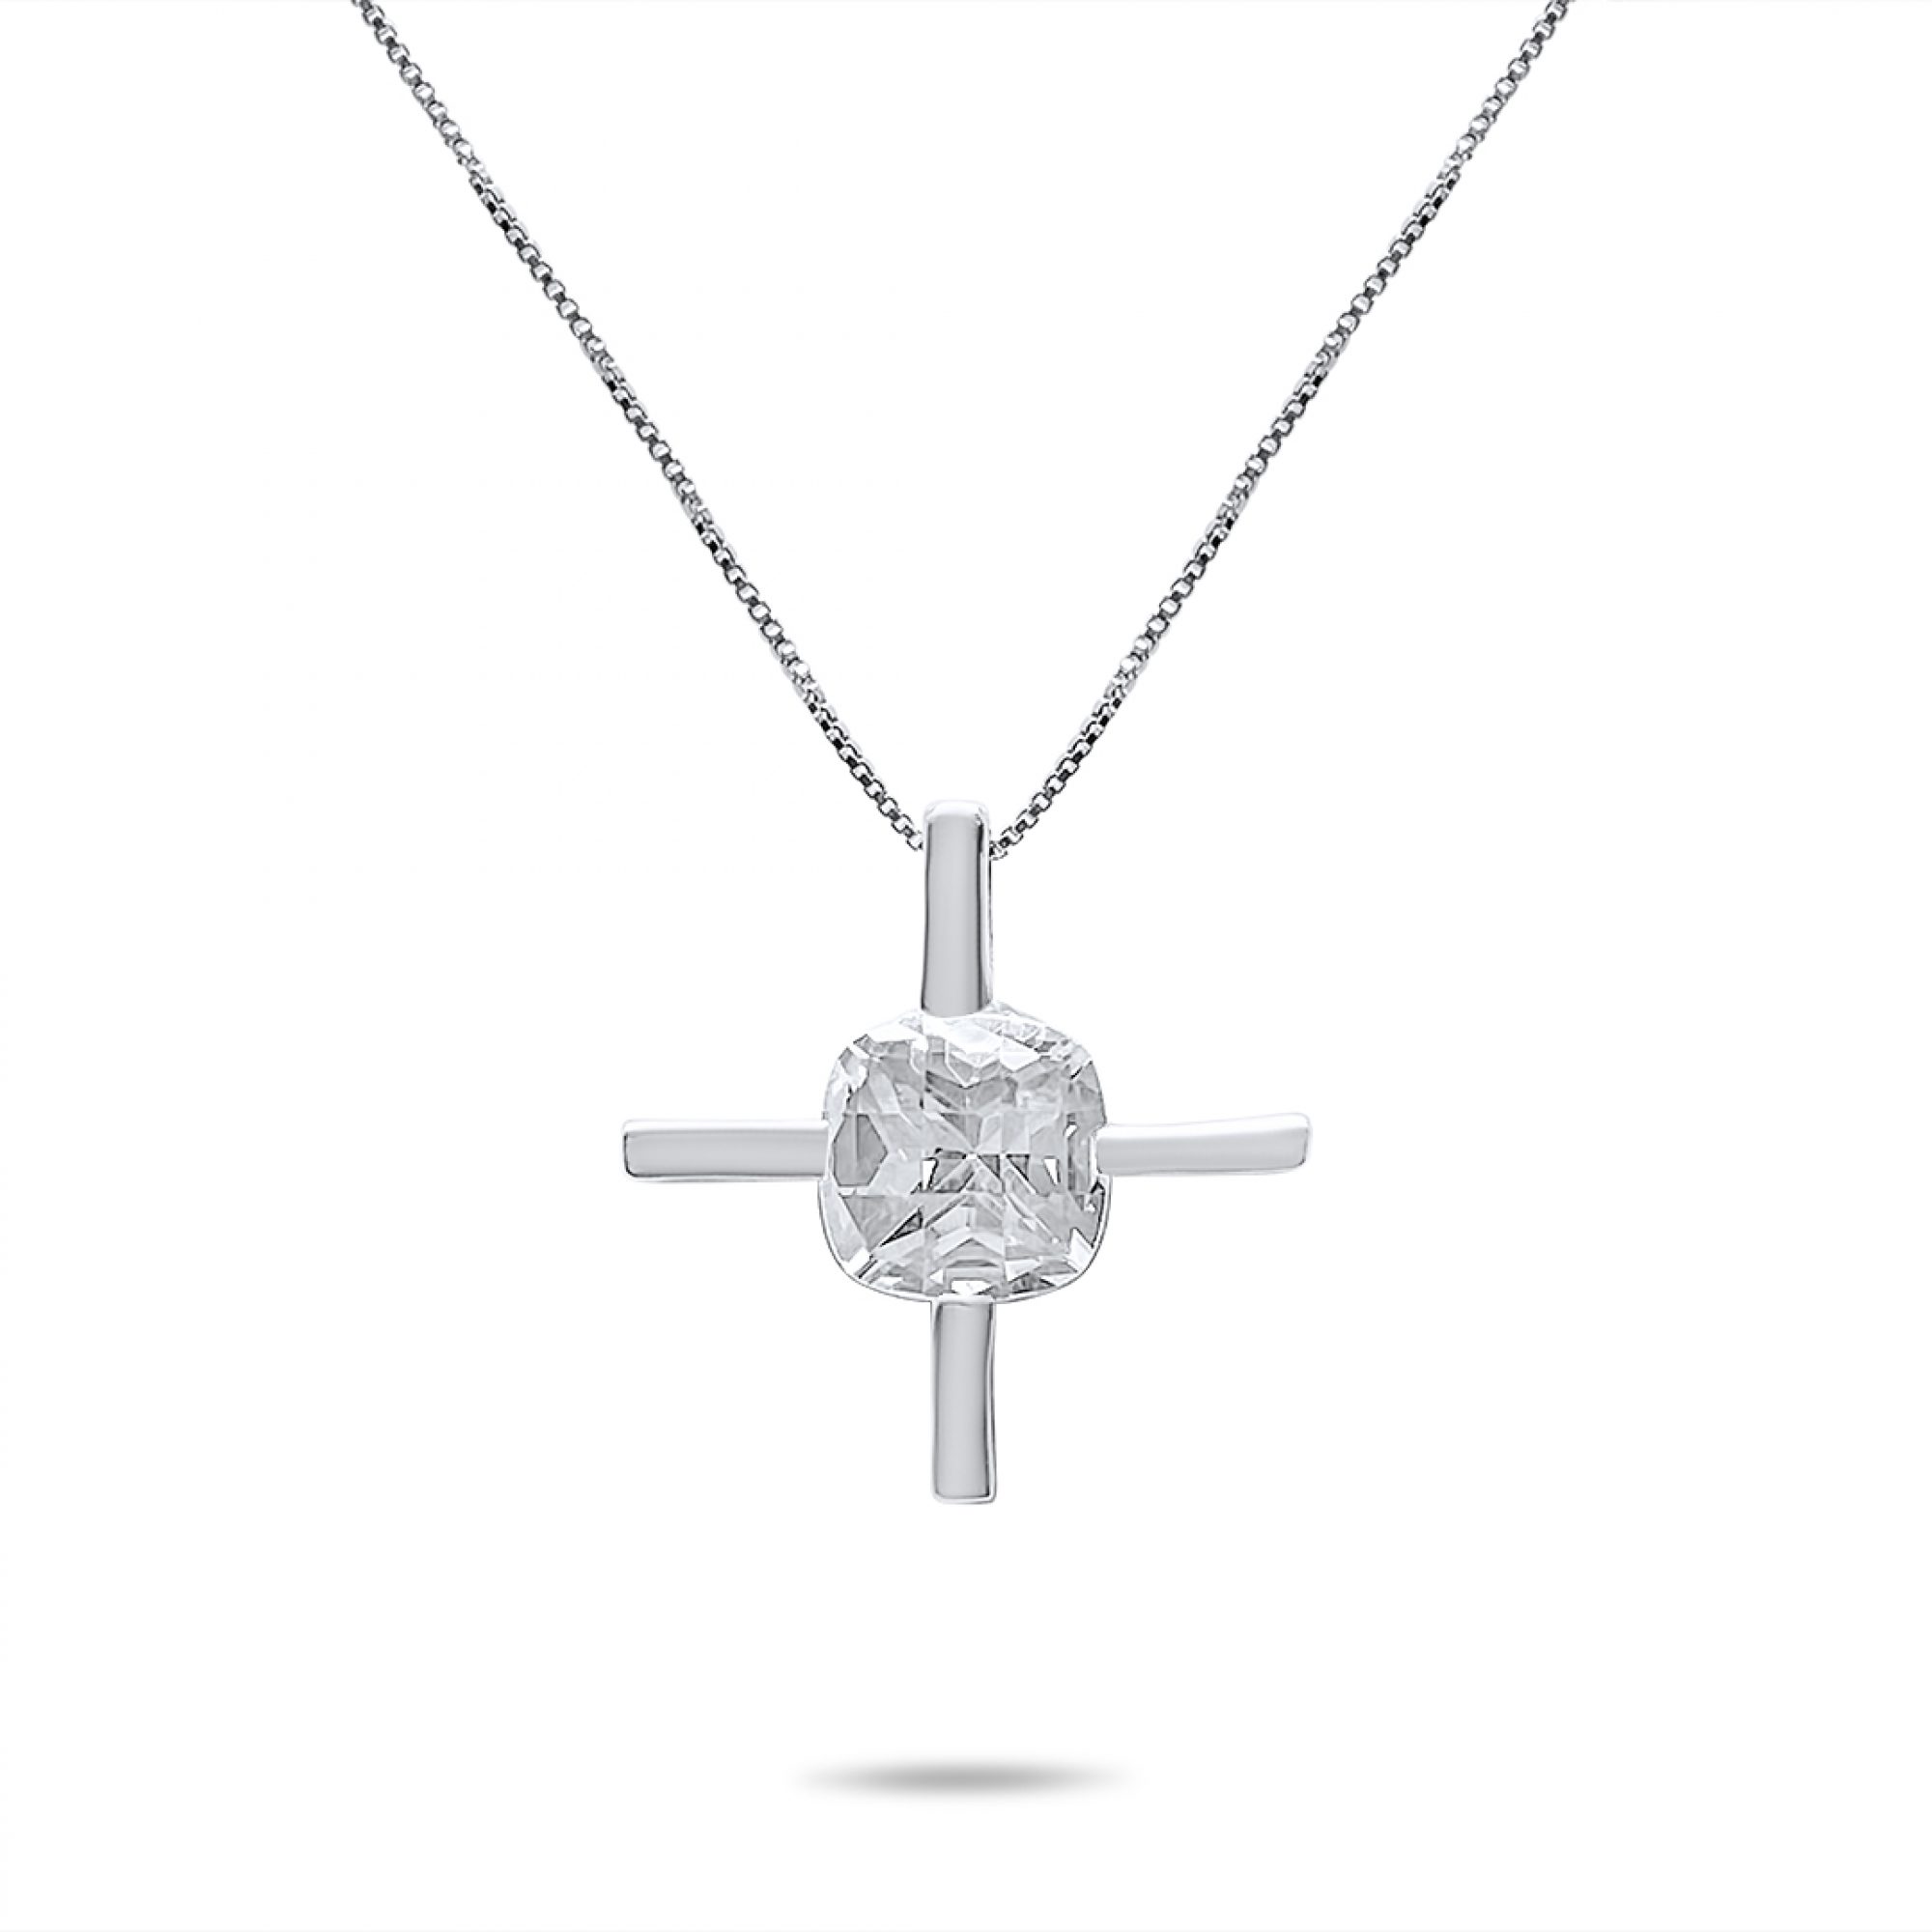 Cross necklace with zircon stone